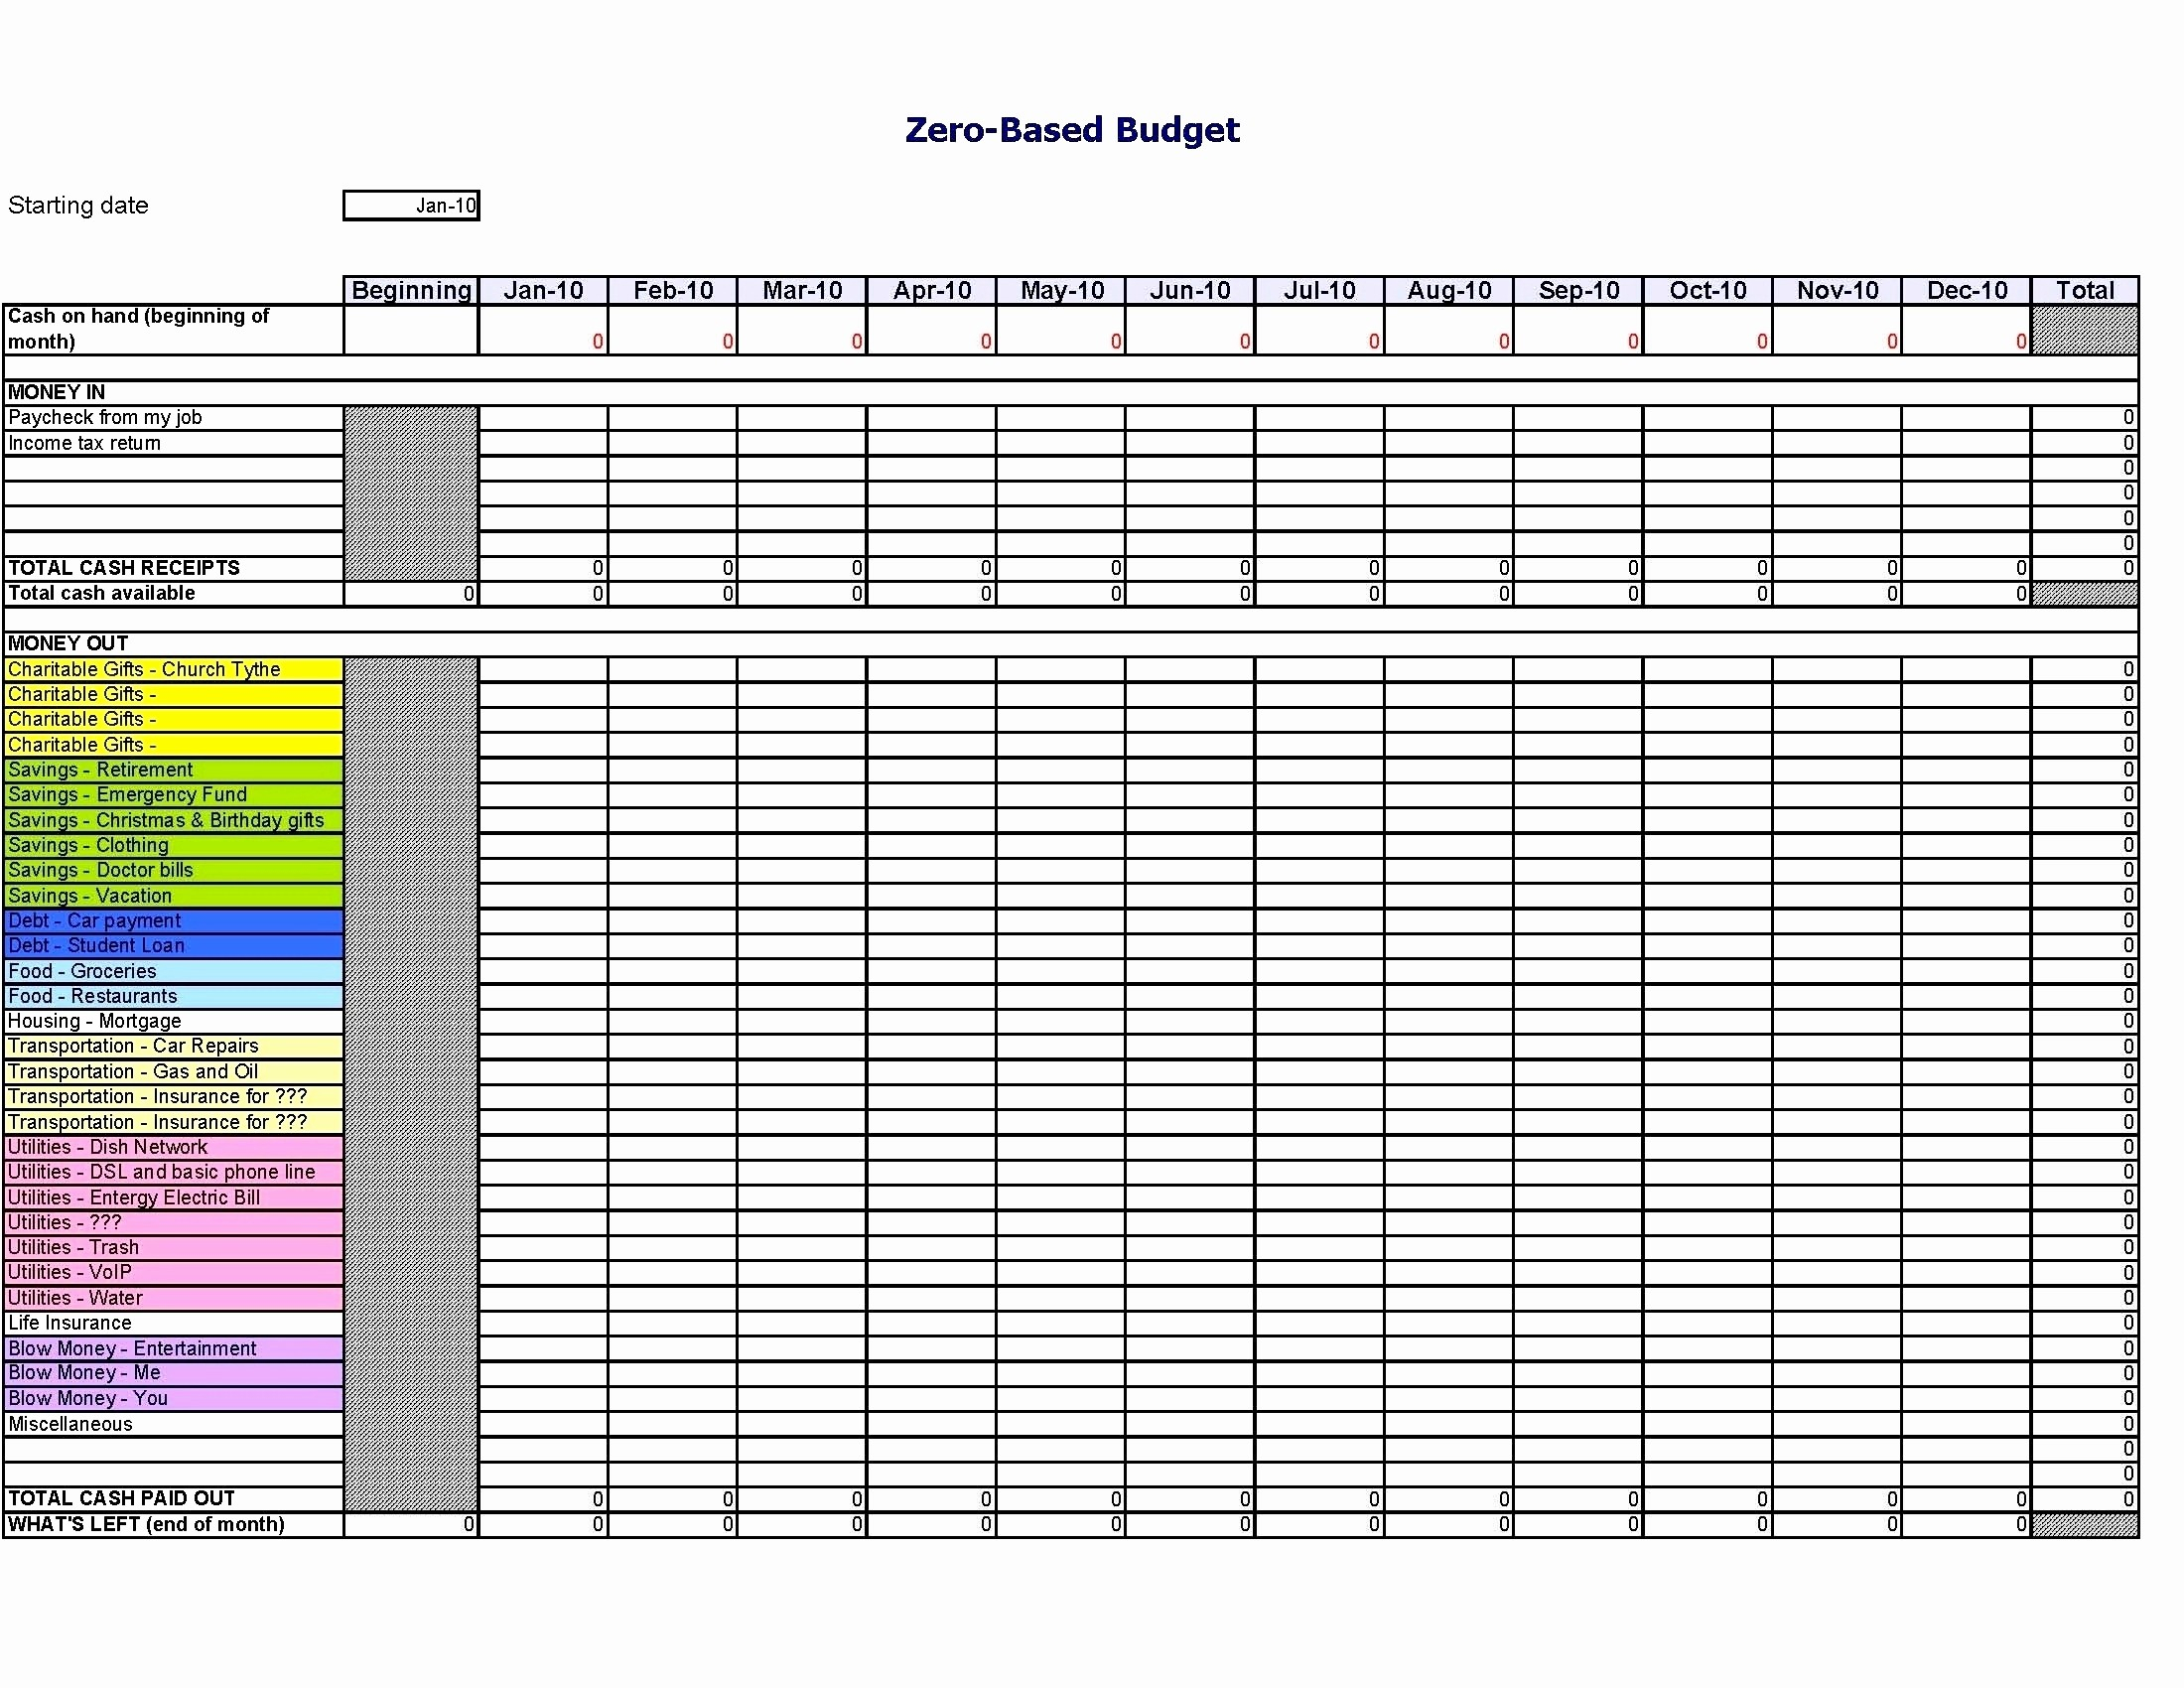 College Application Spreadsheet Checklist Within College Application Spreadsheet Checklist  Austinroofing